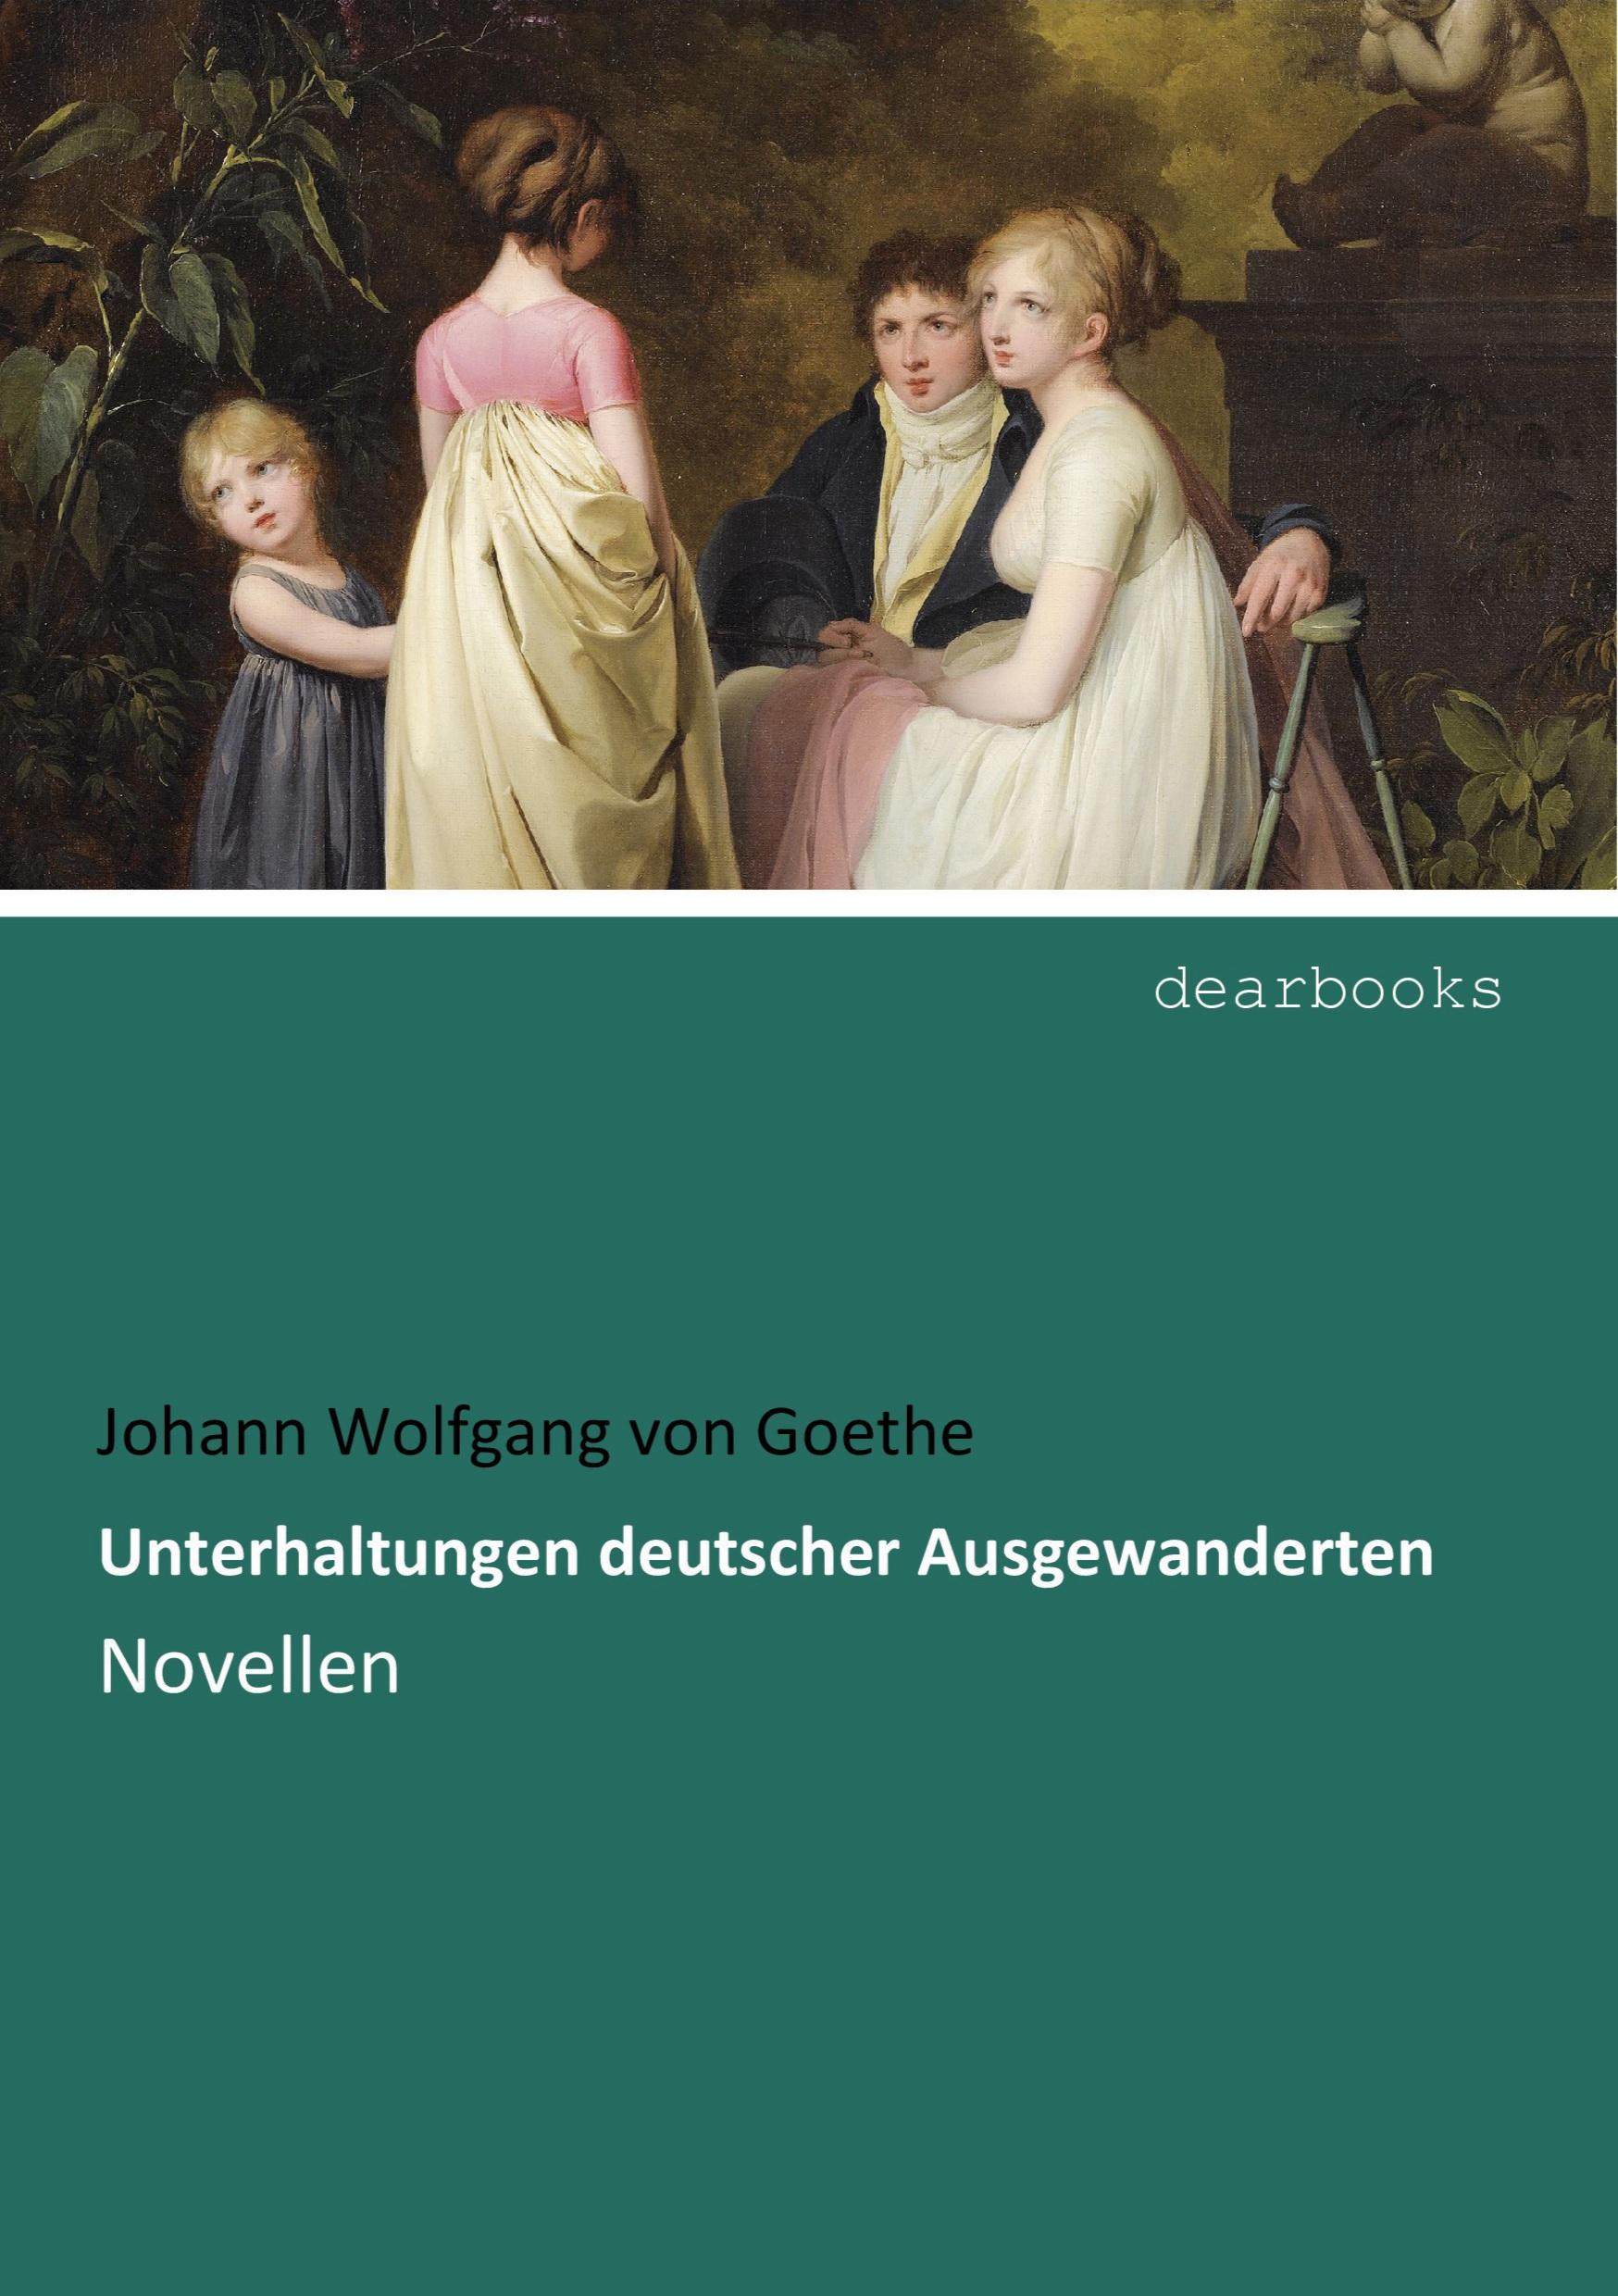 Unterhaltungen deutscher Ausgewanderten | Novellen | Johann Wolfgang von Goethe | Taschenbuch | Paperback | 104 S. | Deutsch | 2016 | dearbooks | EAN 9783954550326 - Goethe, Johann Wolfgang von